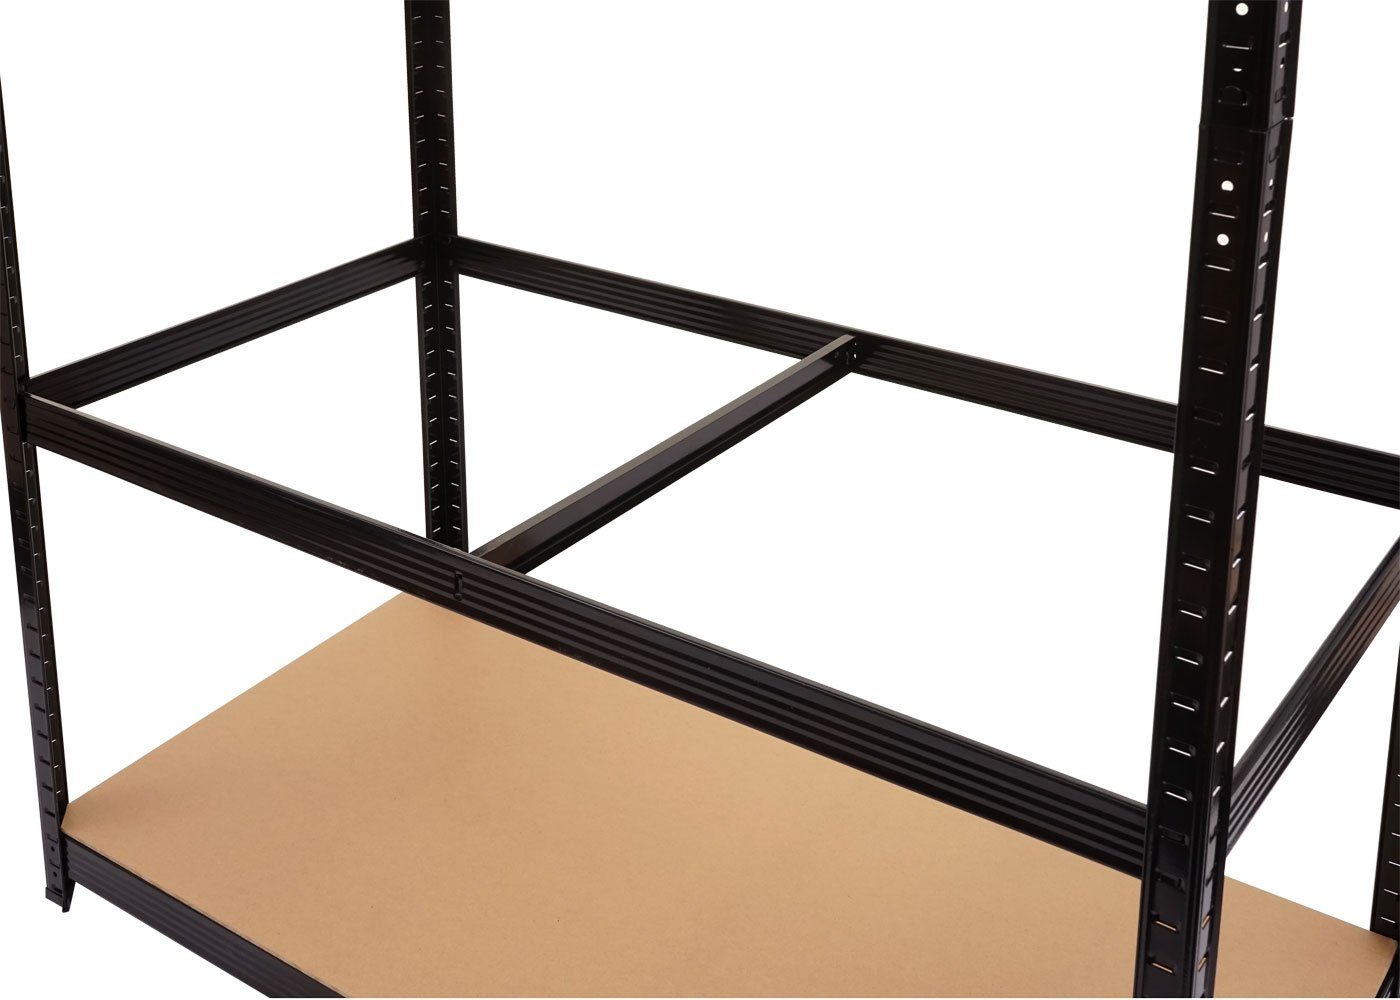 Holzböden Ebenenhöhe Set, MCW-E33-2, werden 5 Stecksystem, MCW Schwerlastregal individuell schwarz festgelegt kann